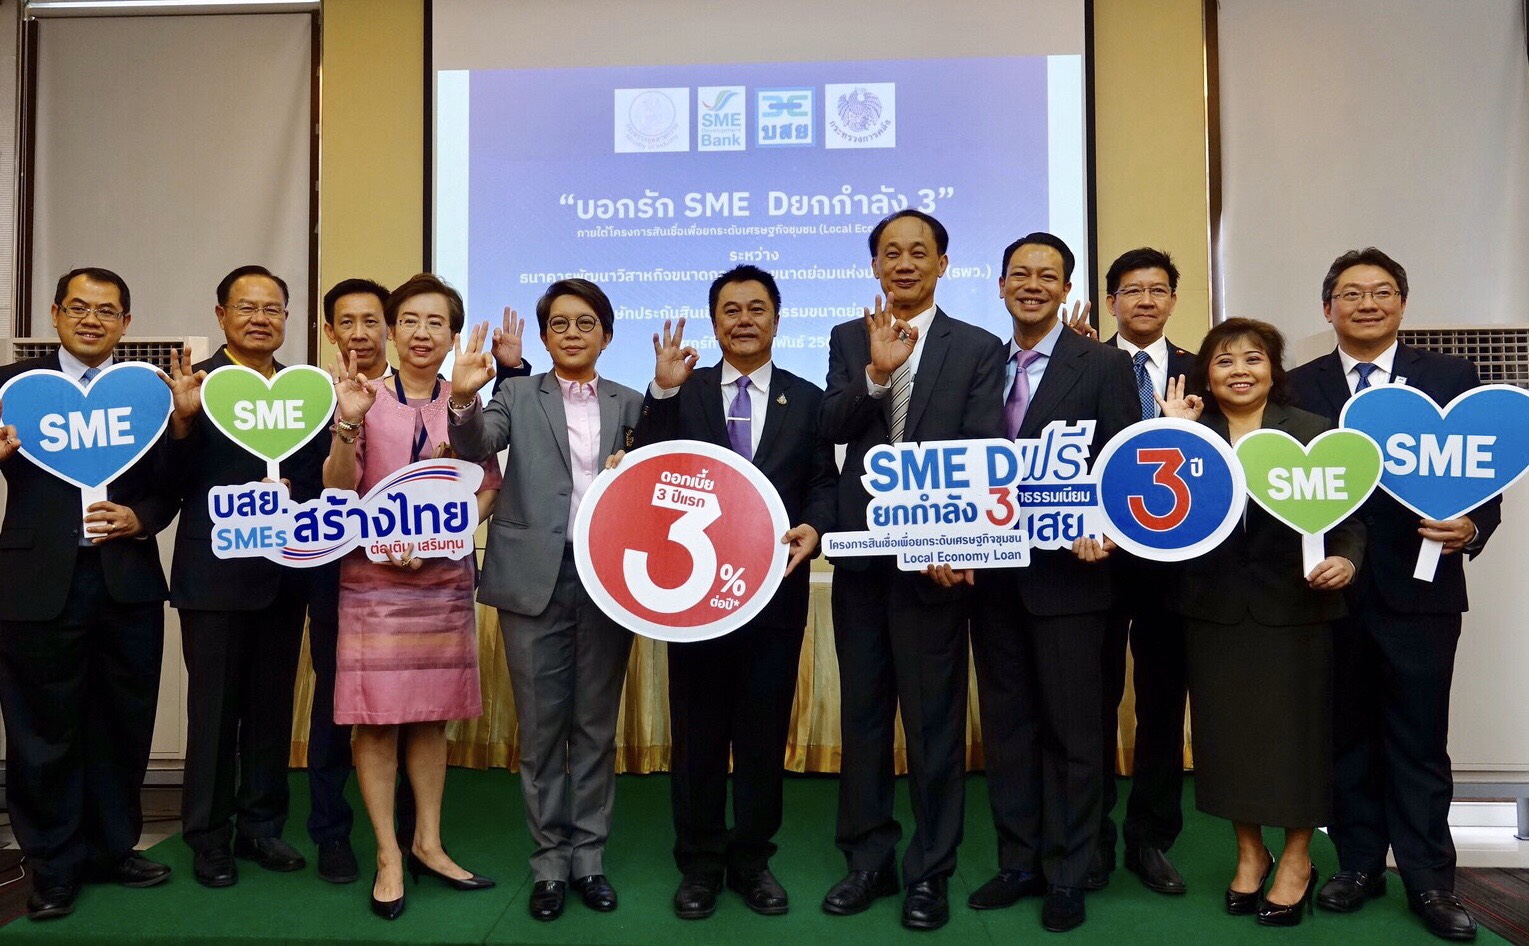 ธพว. ผนึก บสย. คิกออฟ ‘SME D ยกกำลัง 3’ เติมทุนดอกเบี้ยถูก ฟรีค่าธรรมเนียมค้ำประกัน 3 ปี   ขับเคลื่อนมาตรการ “ต่อเติม เสริมทุน SMEs สร้างไทย” ช่วยผู้ประกอบการลดต้นทุนธุรกิจ